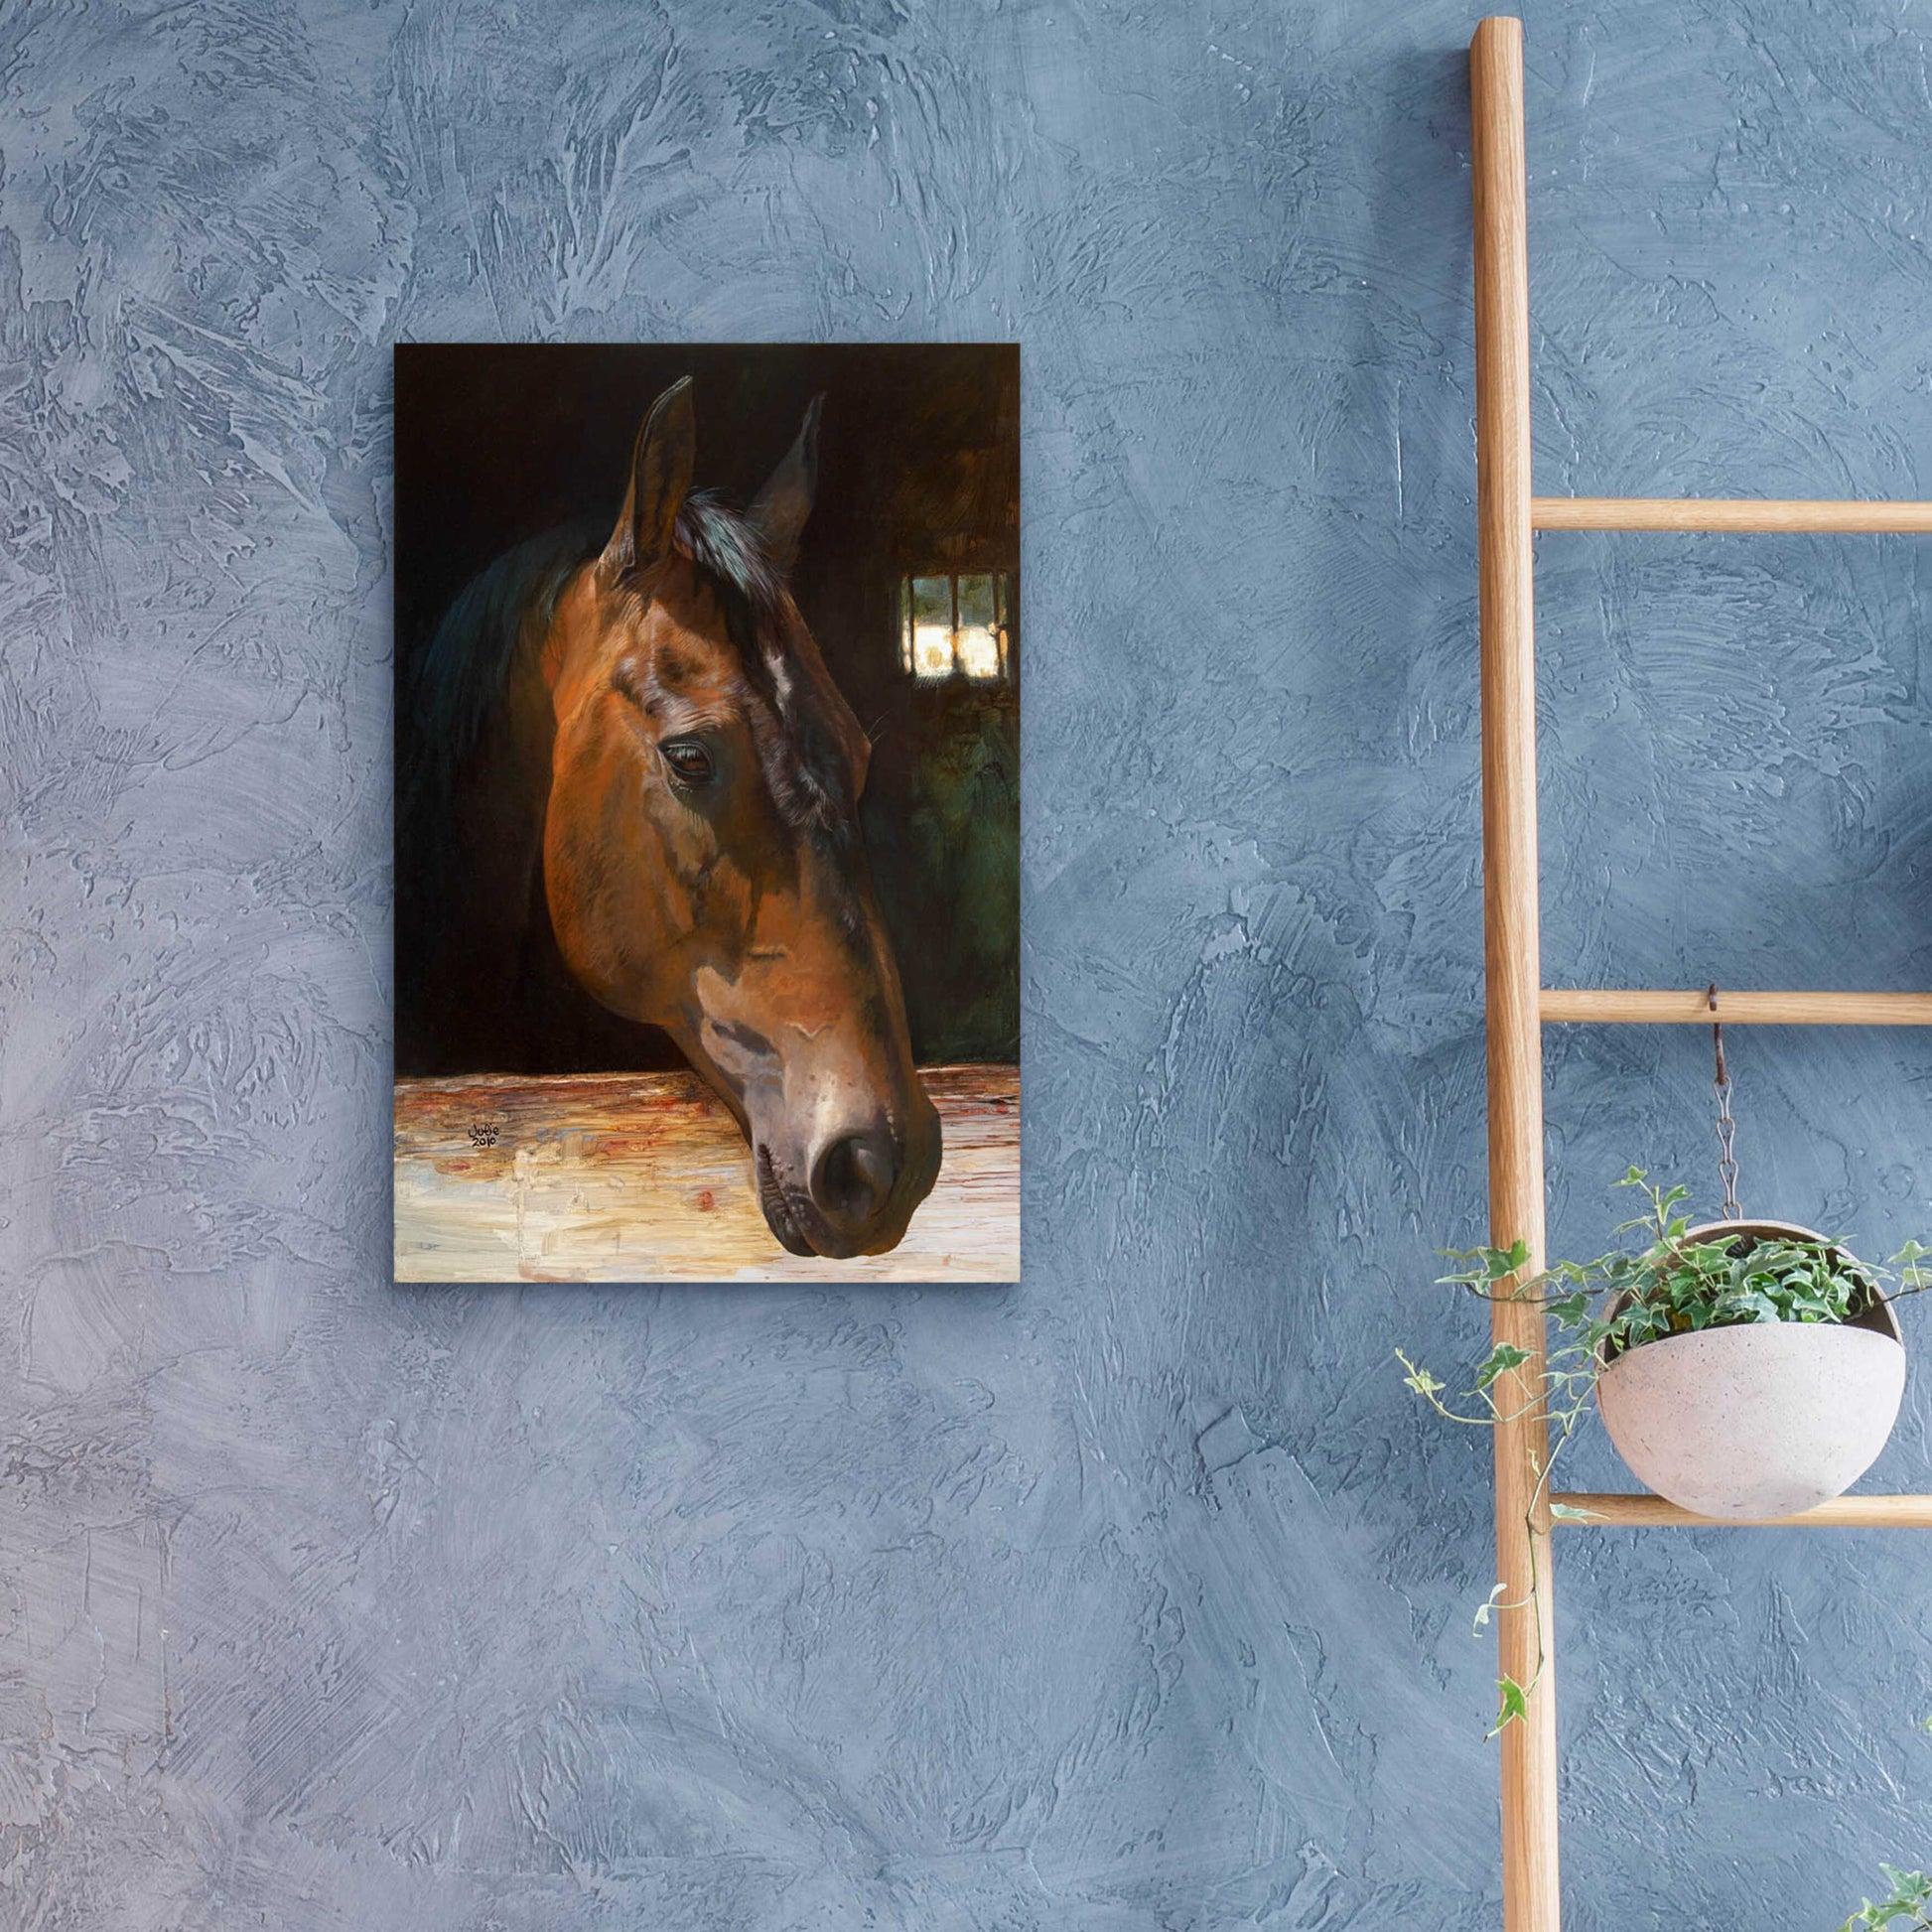 Epic Art 'Quakertown Horse' by Julie Bel, Acrylic Glass Wall Art,16x24